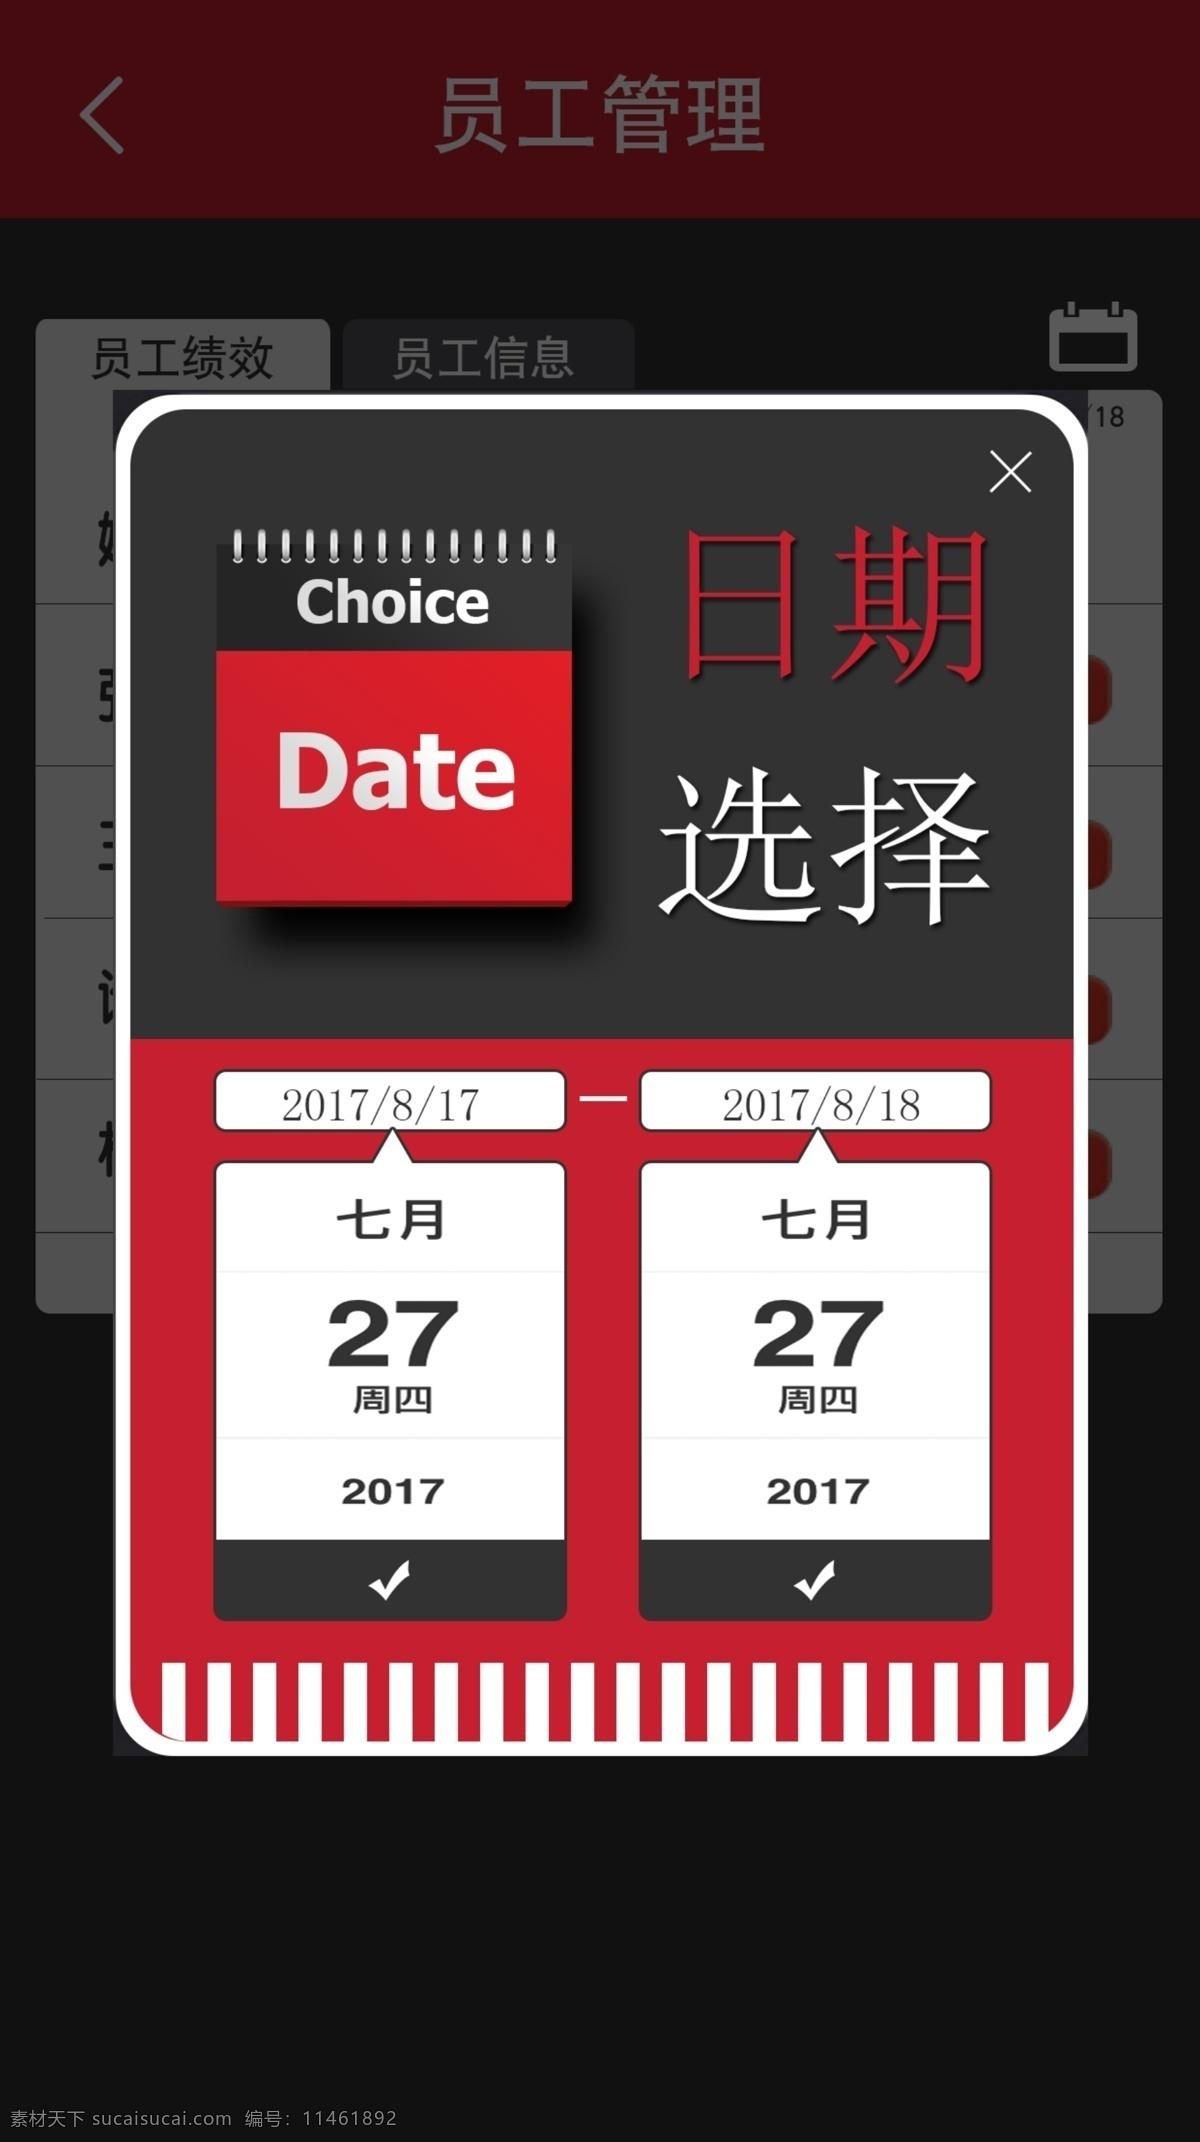 弹 框 模板 日历 手机 移动 端 界面 选择 日期 日历模板 红黑色模态框 弹出框模板